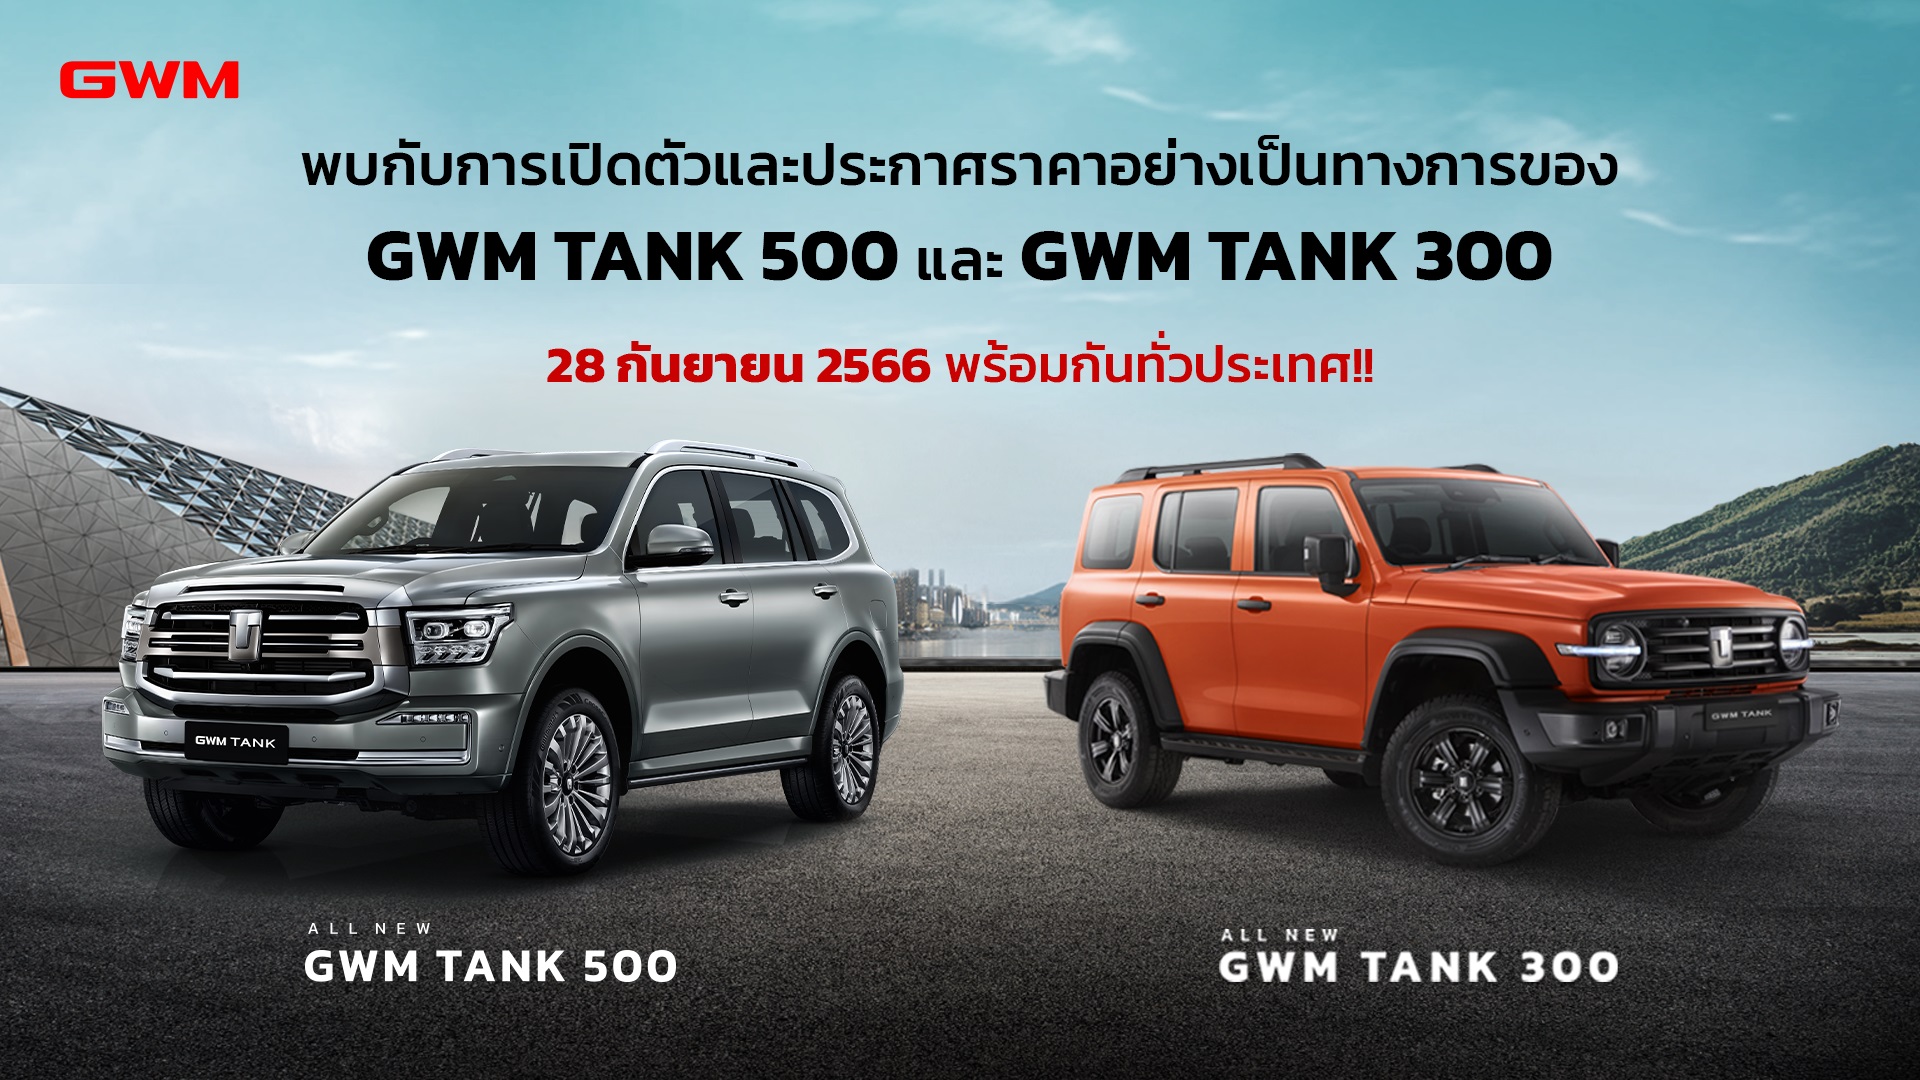 All New GWM TANK 500 Hybrid SUV